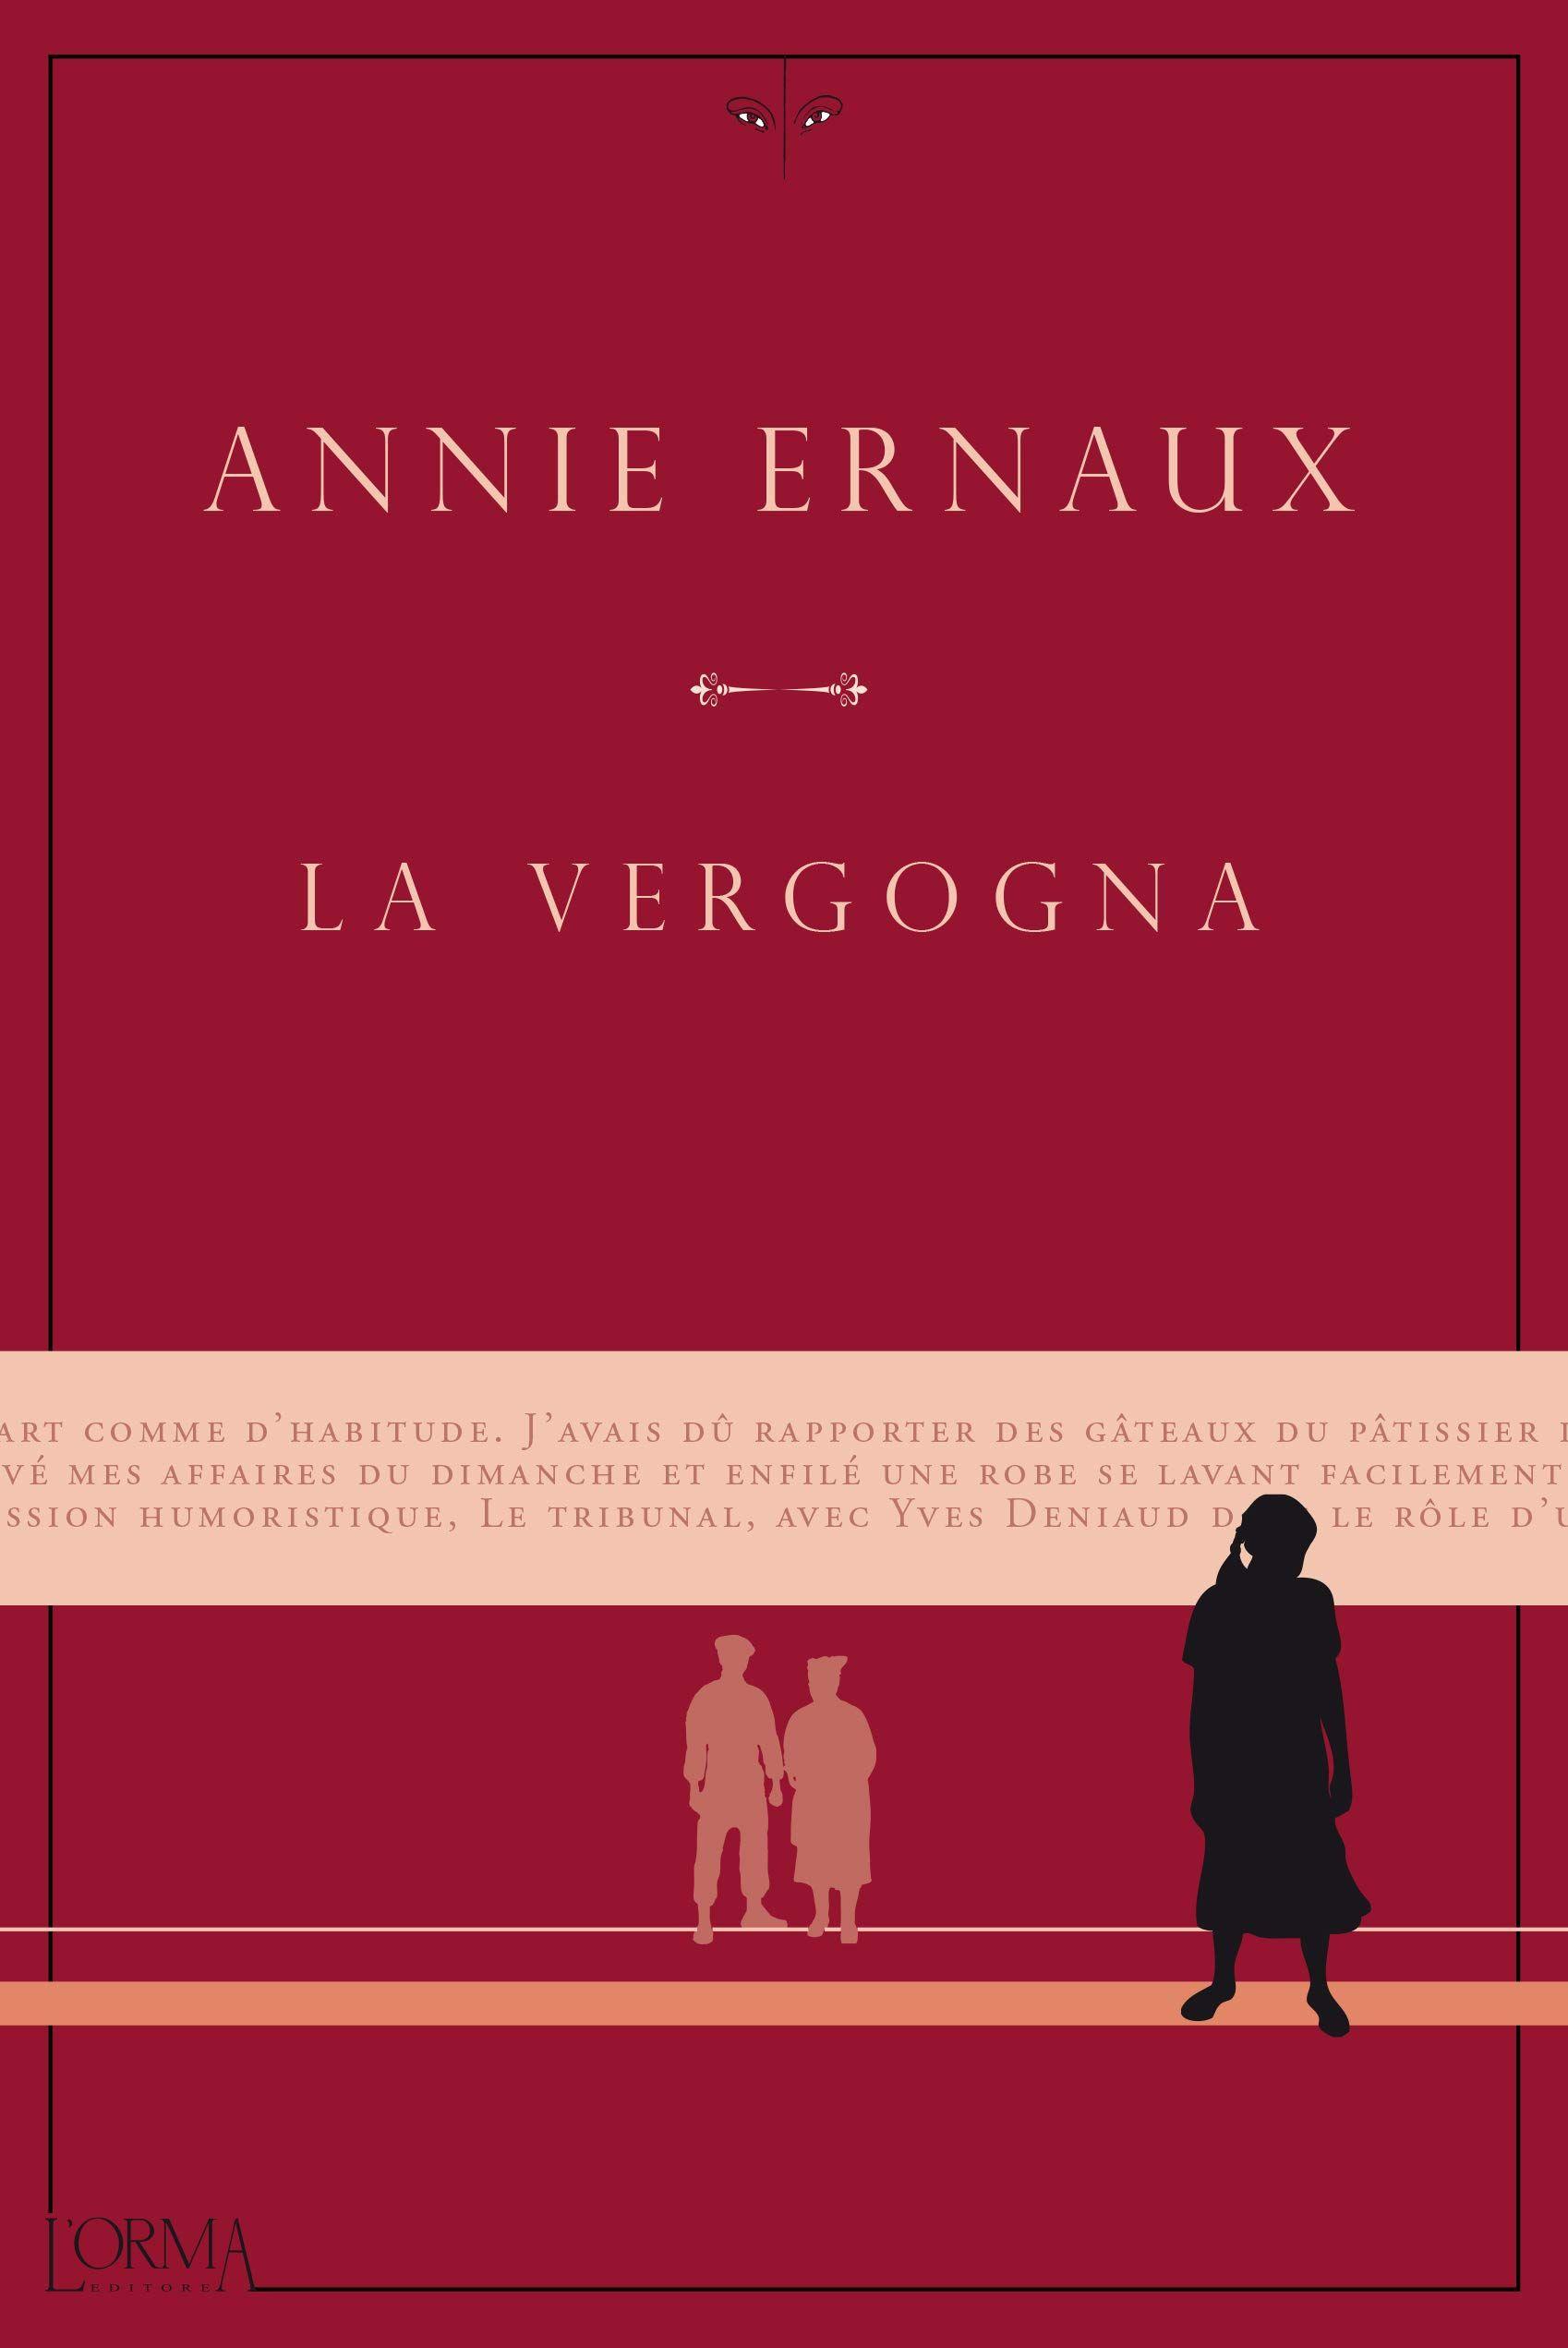 Libro "La vergogna" di Annie Ernaux